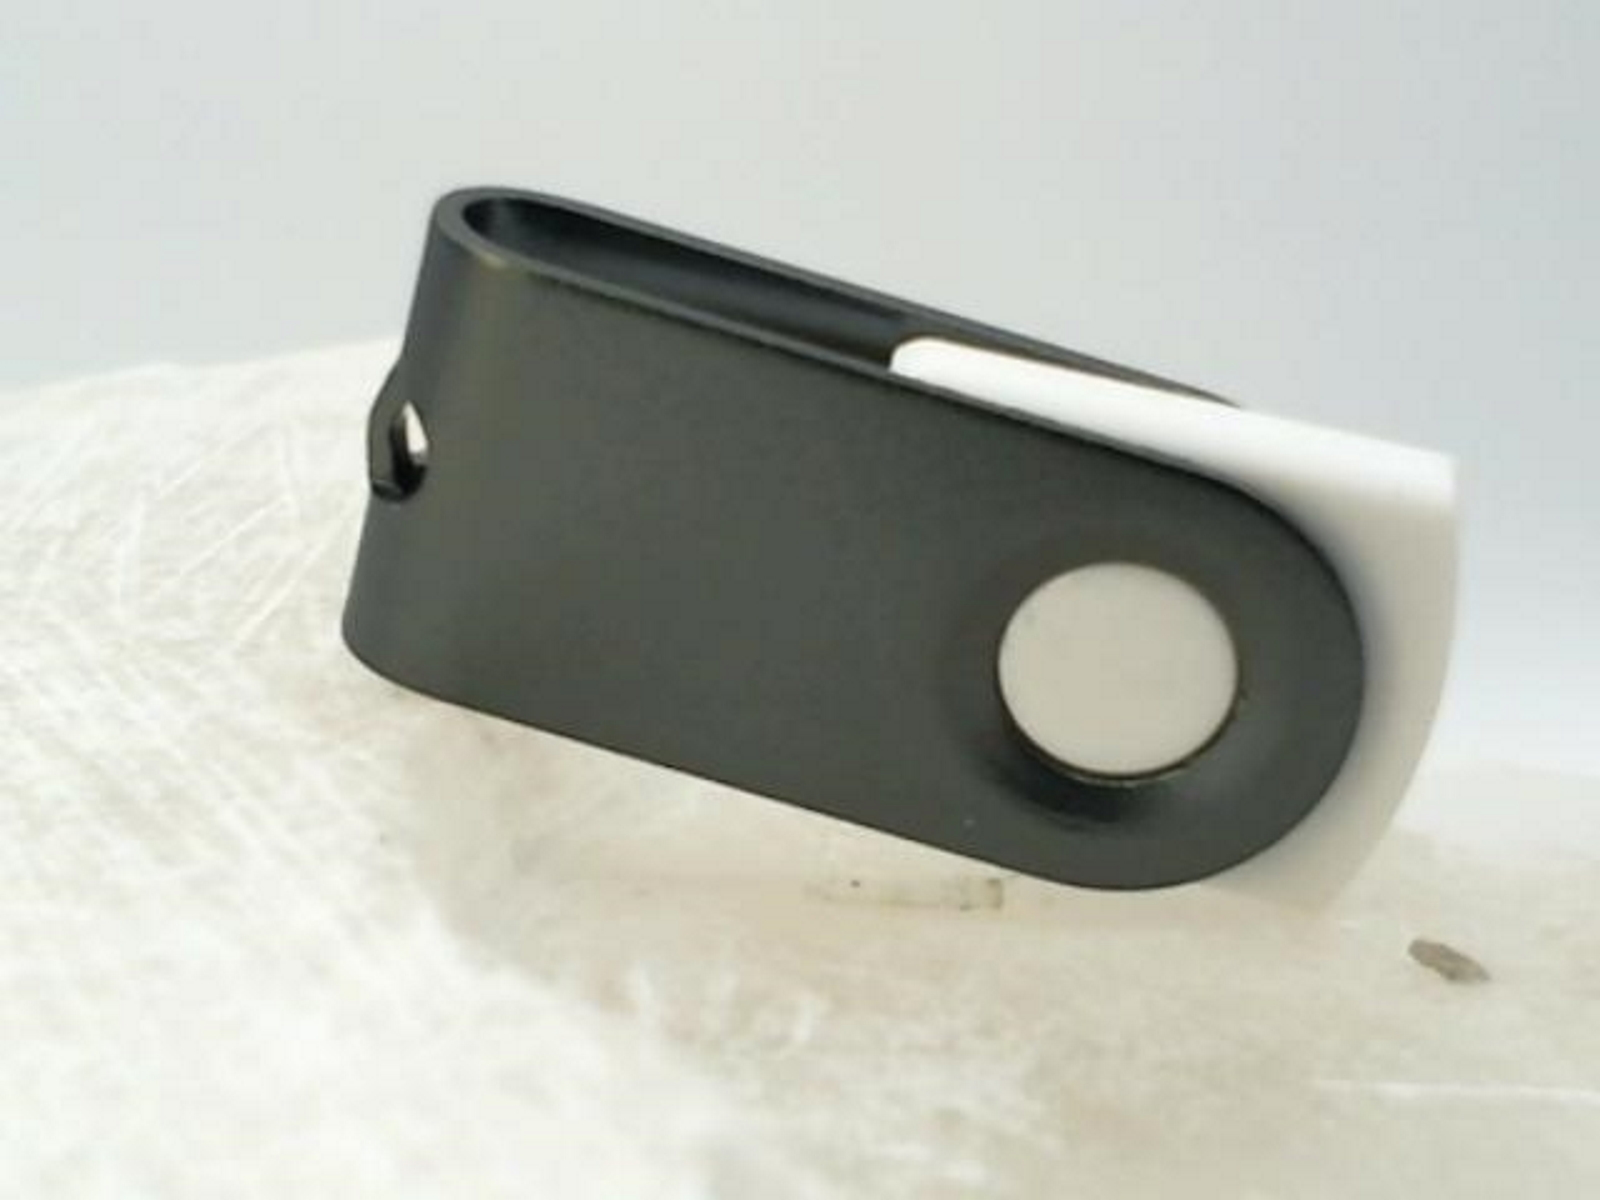 USB USB-Stick ® (Weiß-Graumetall, GERMANY MINI-SWIVEL GB) 2